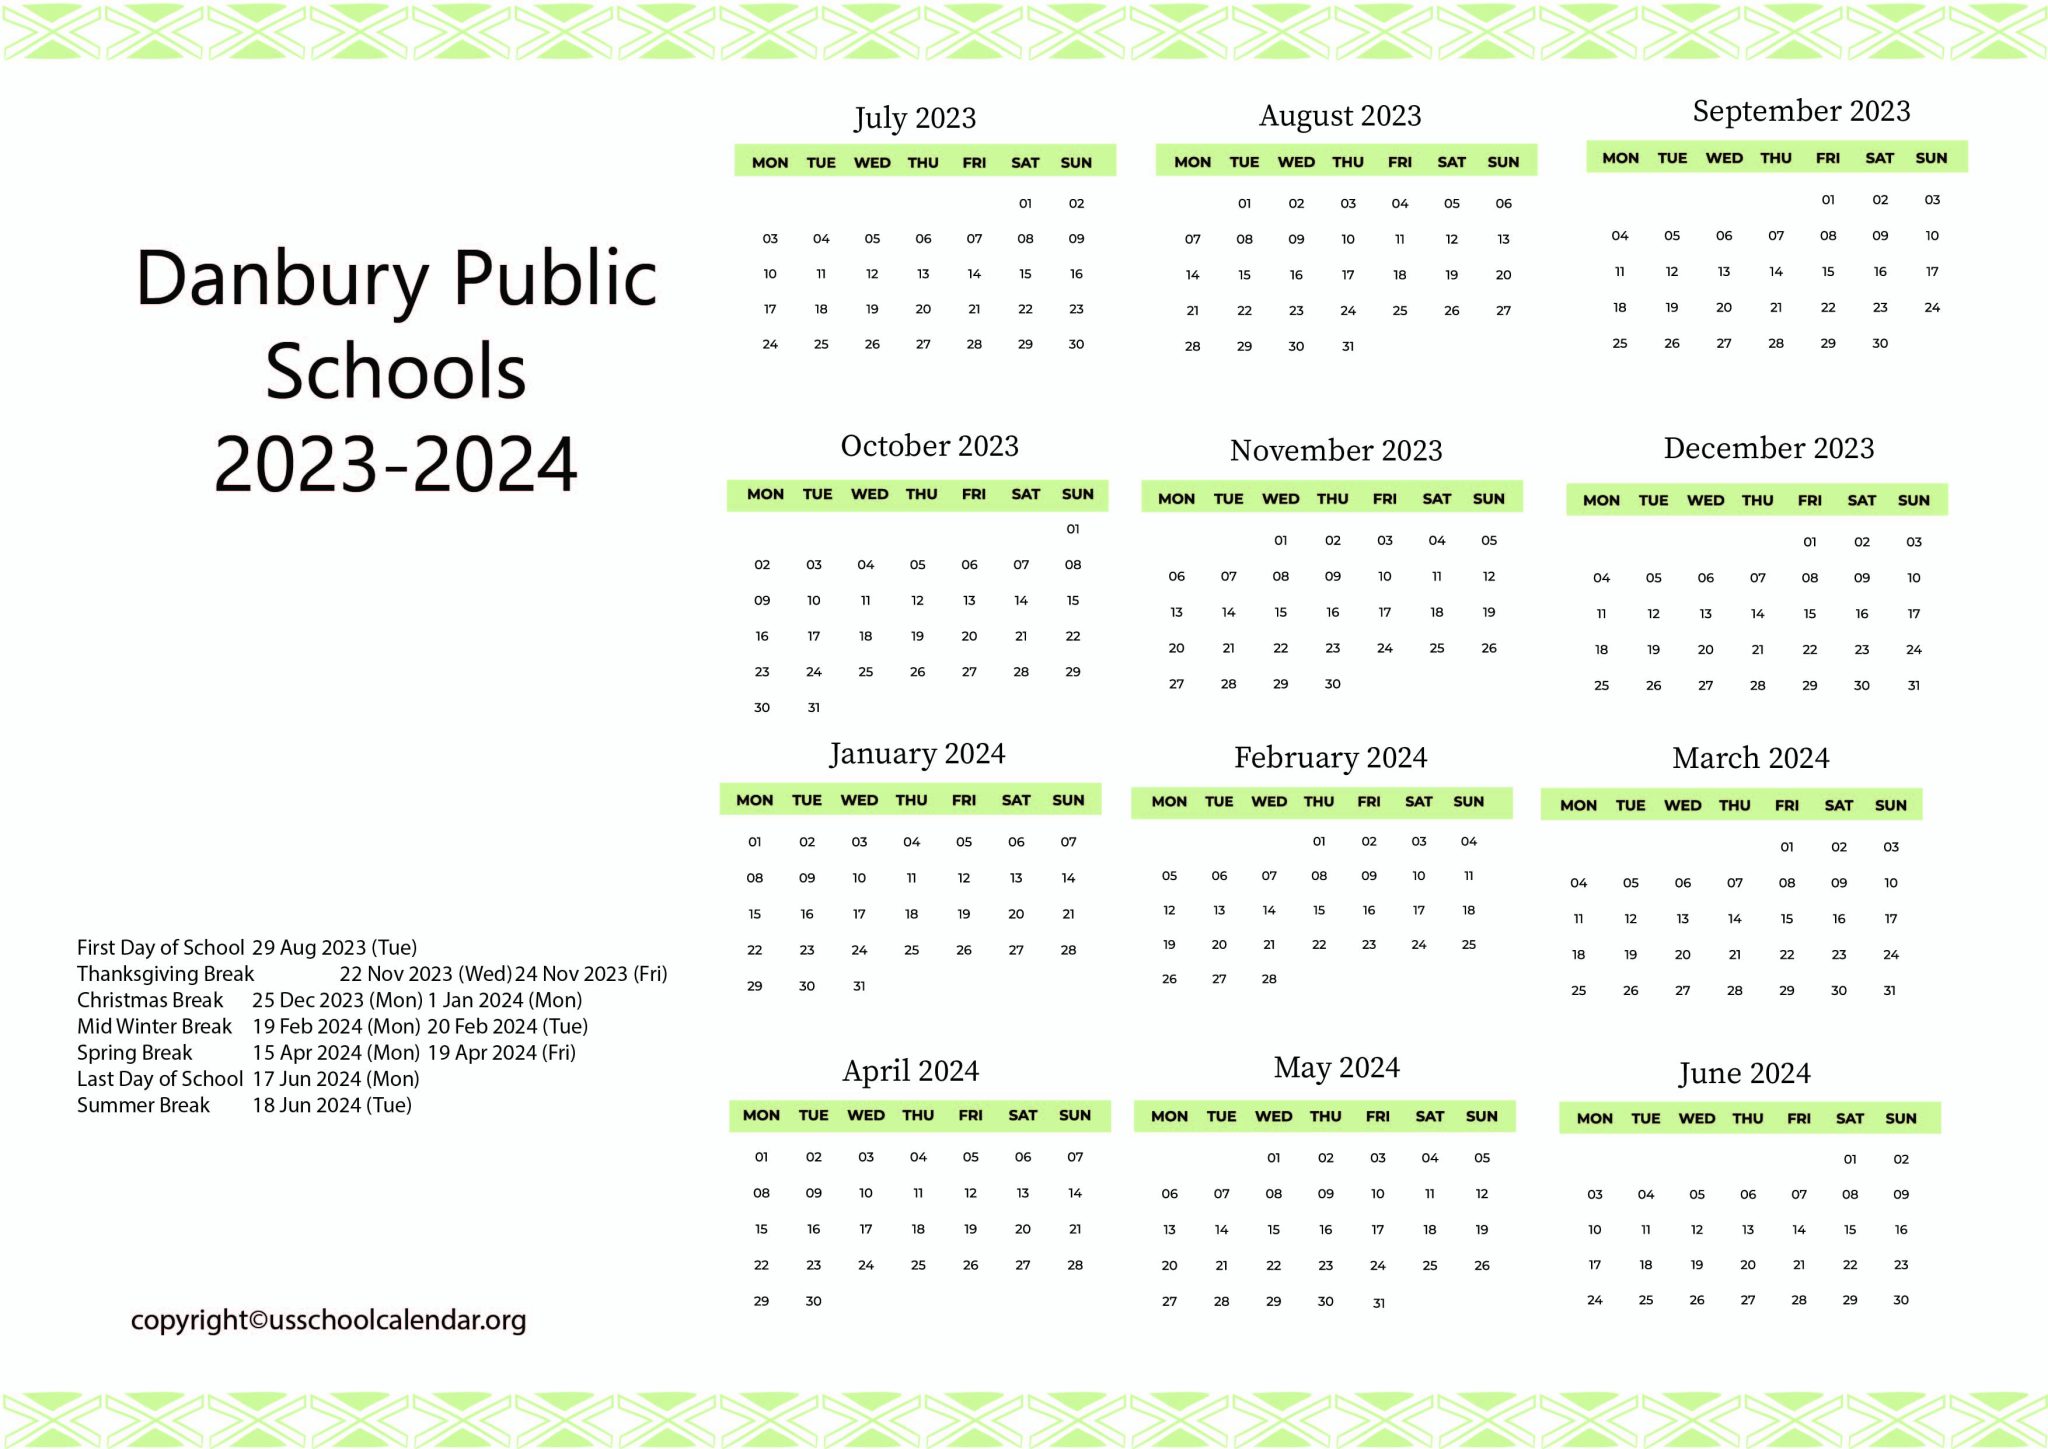 Danbury Public Schools Calendar With Holidays 2023 2024